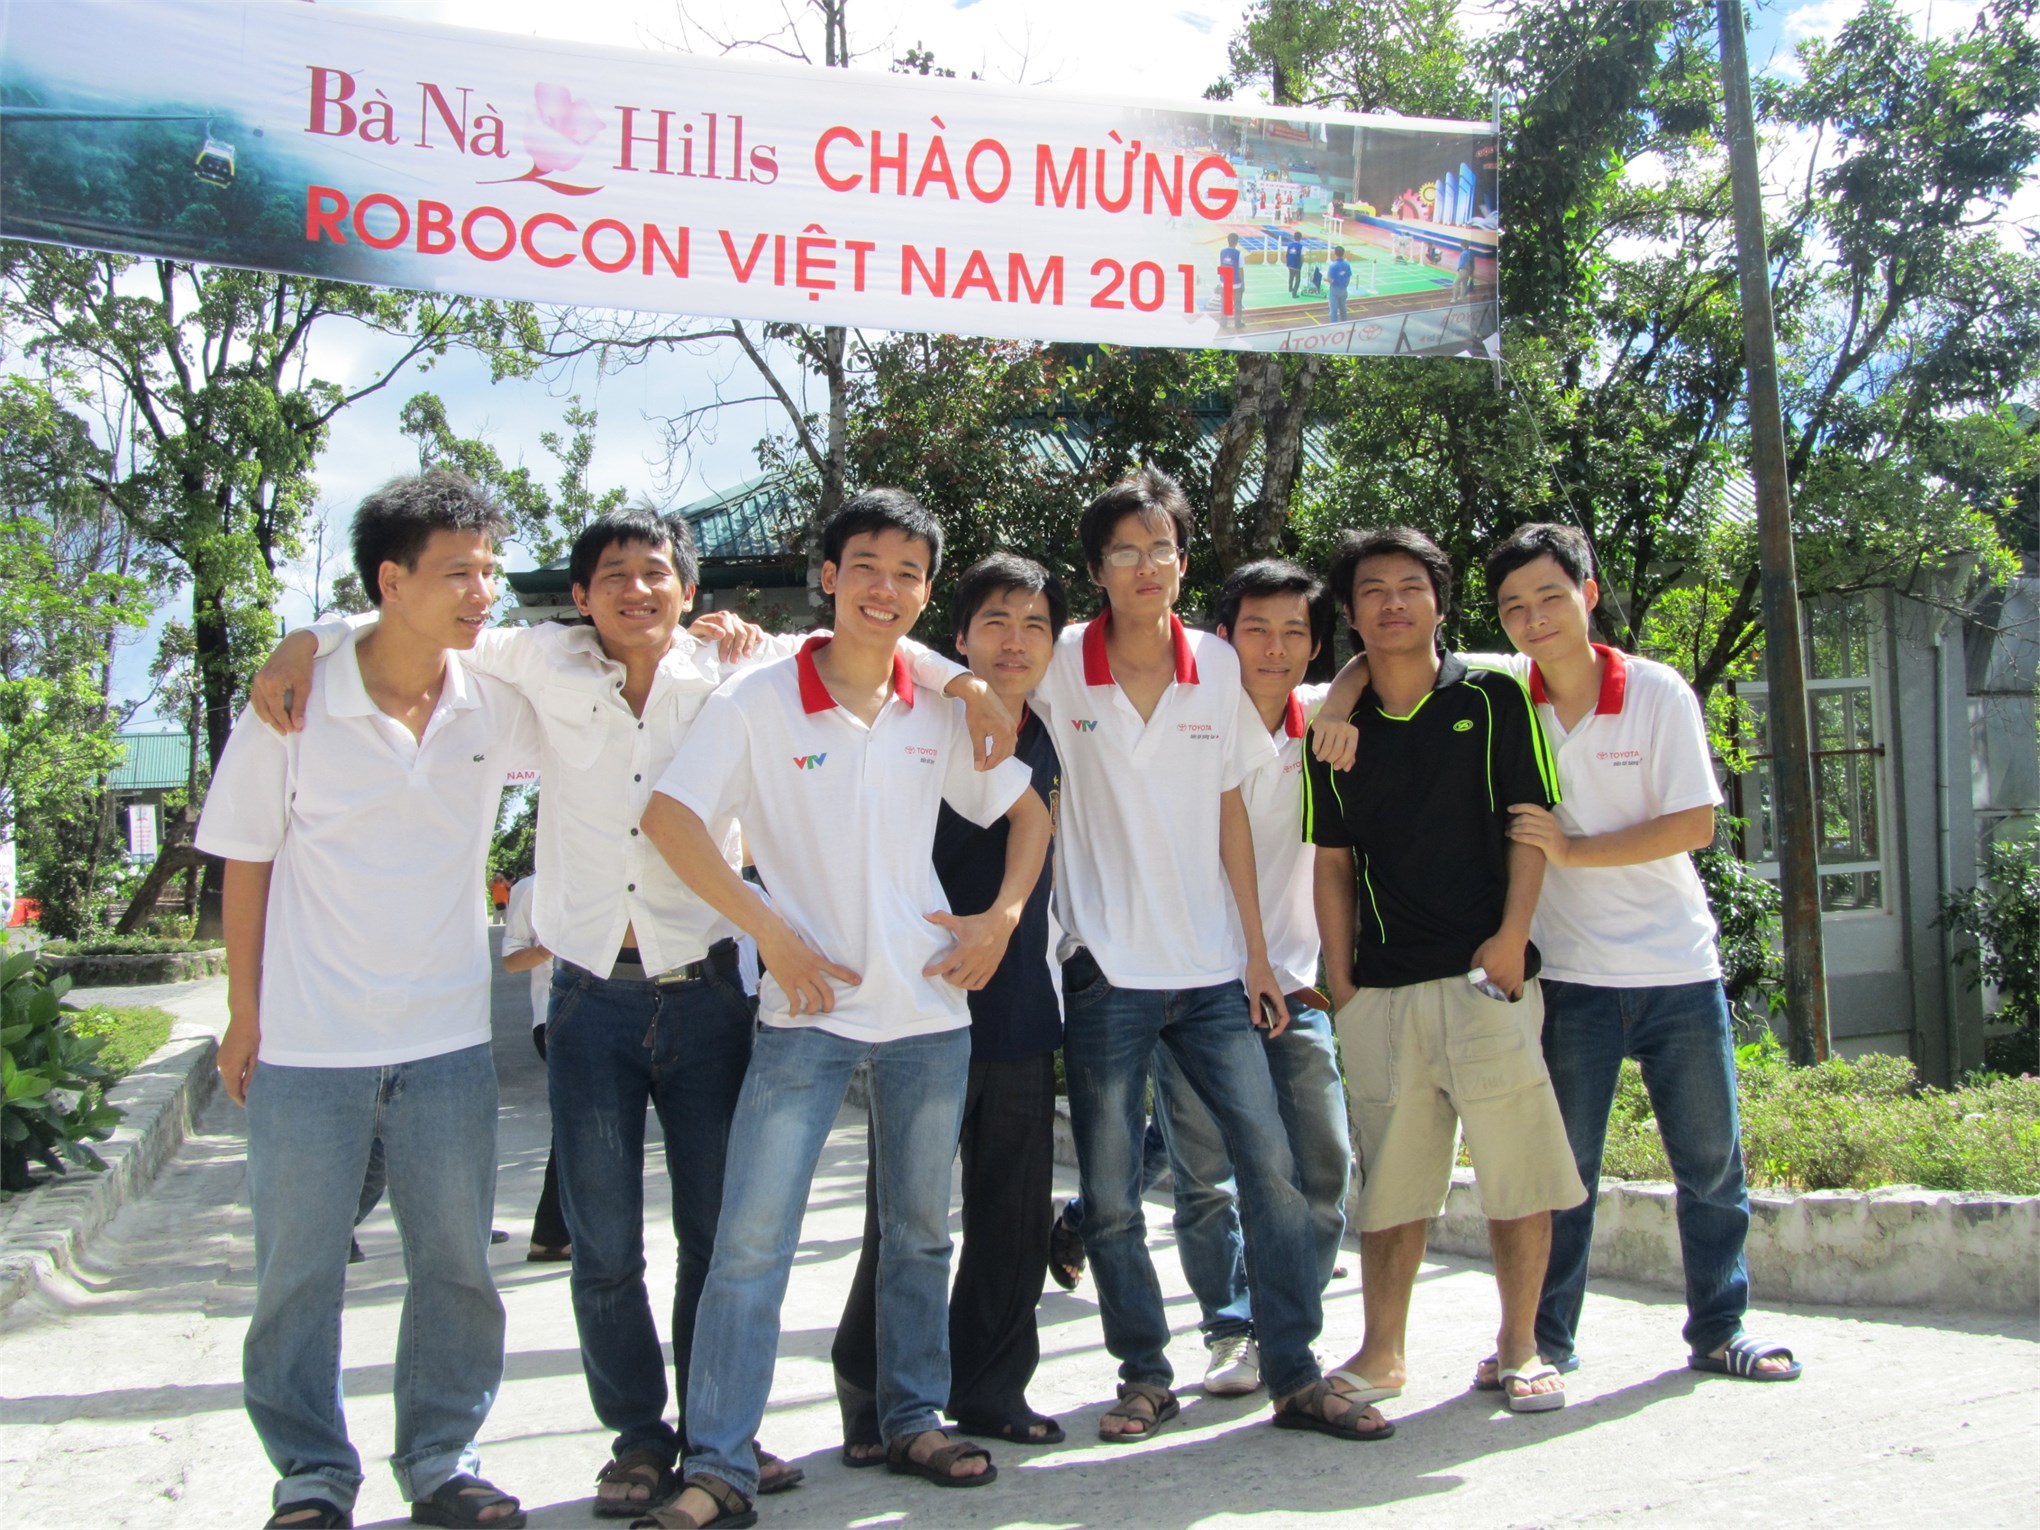 Cựu sinh viên Đỗ Tất Kiên- Phó Giám đốc kinh doanh dịch vụ của công ty TNHH Cybertech Việt Nam